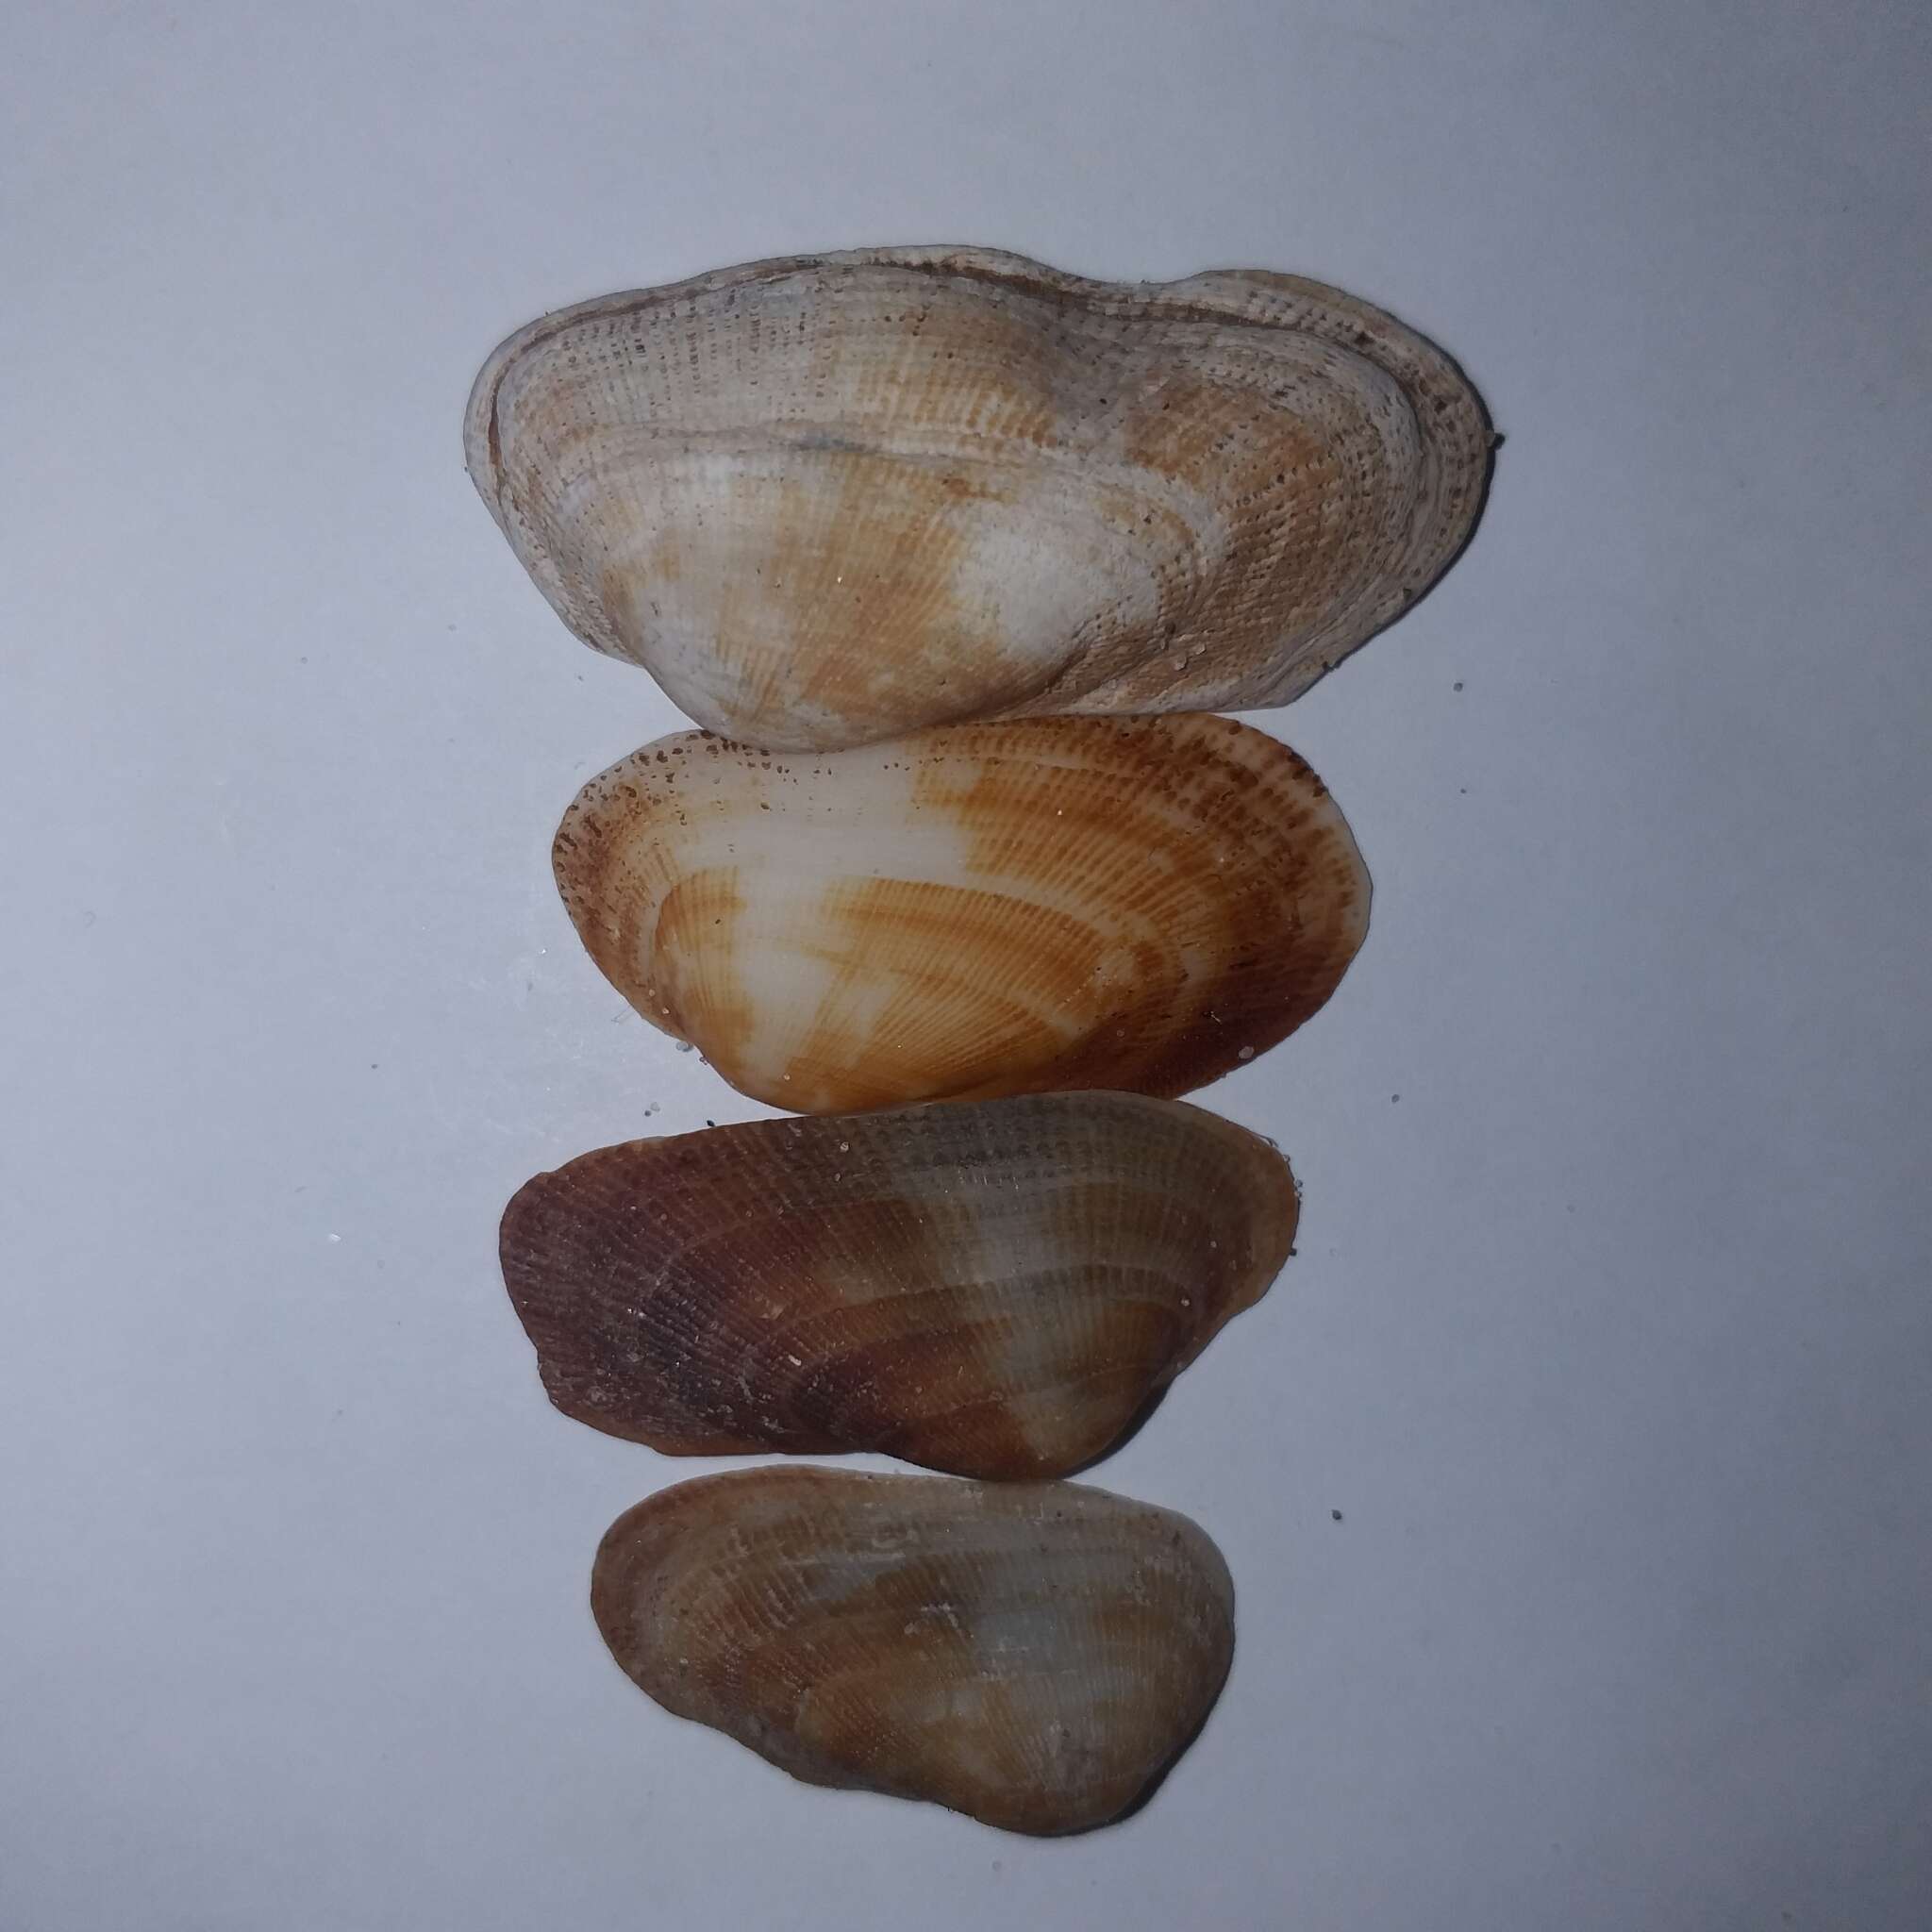 Image of bearded ark shell